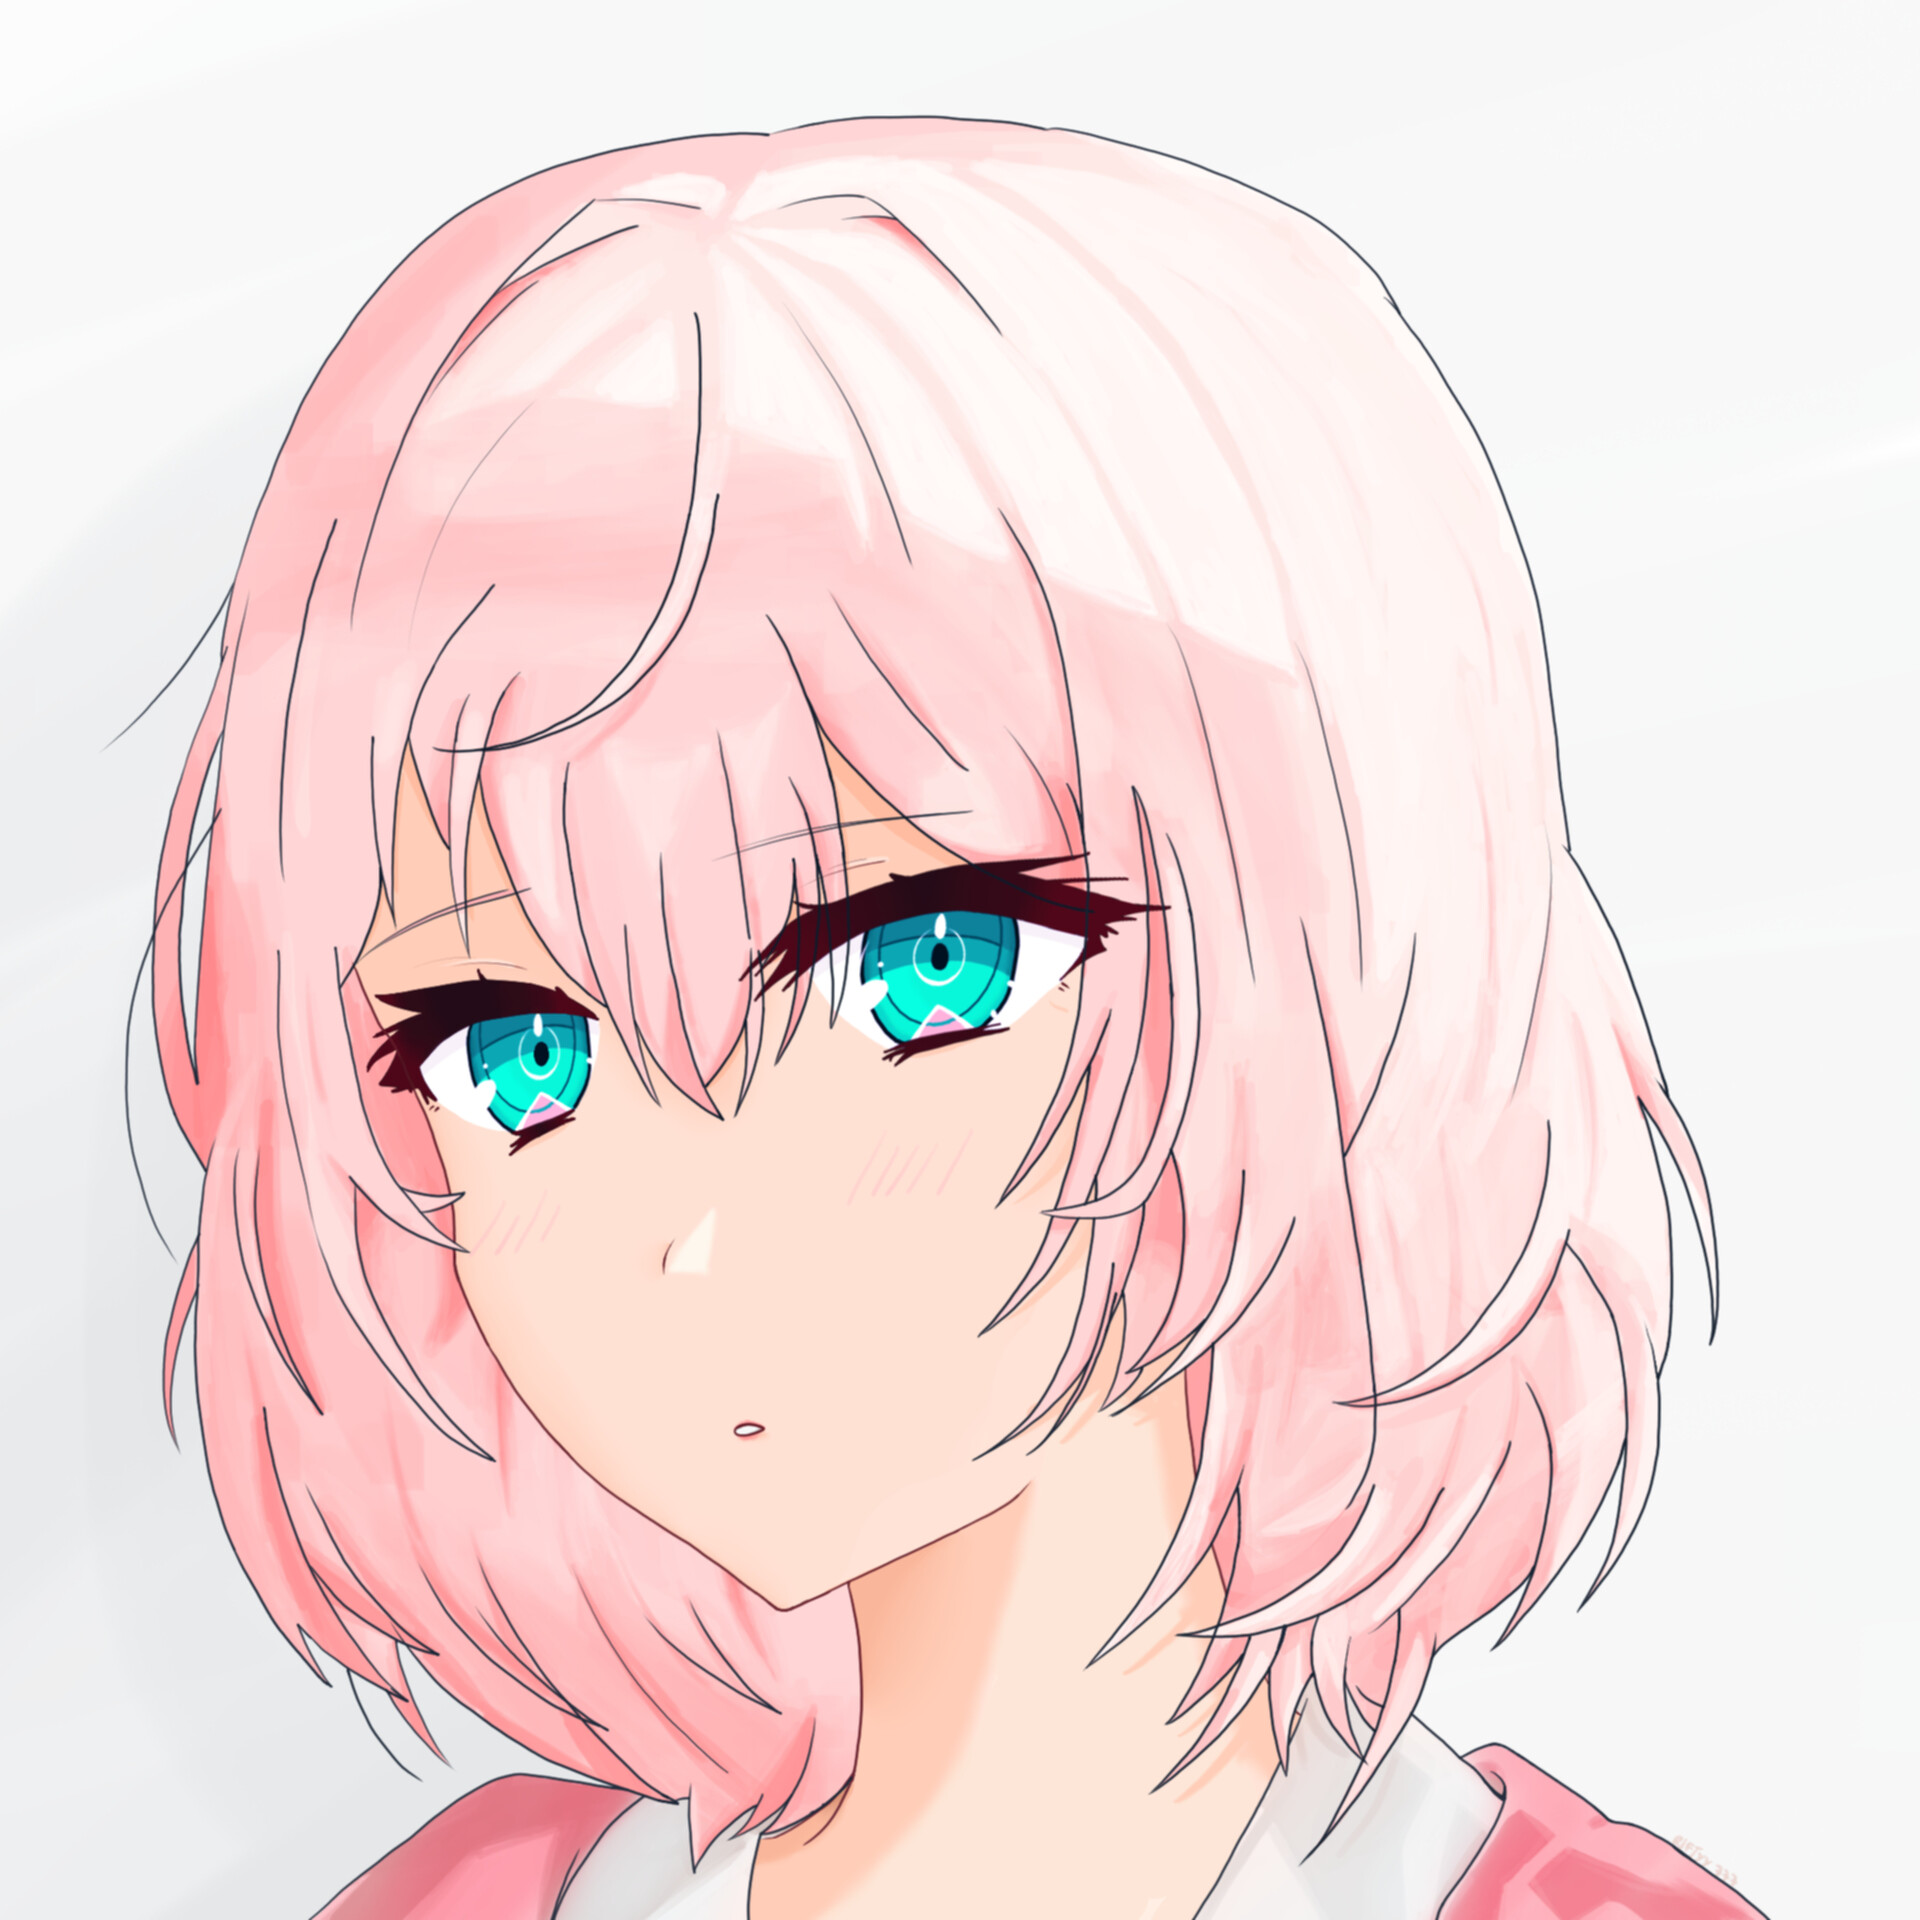 ArtStation - Pink hair anime girl